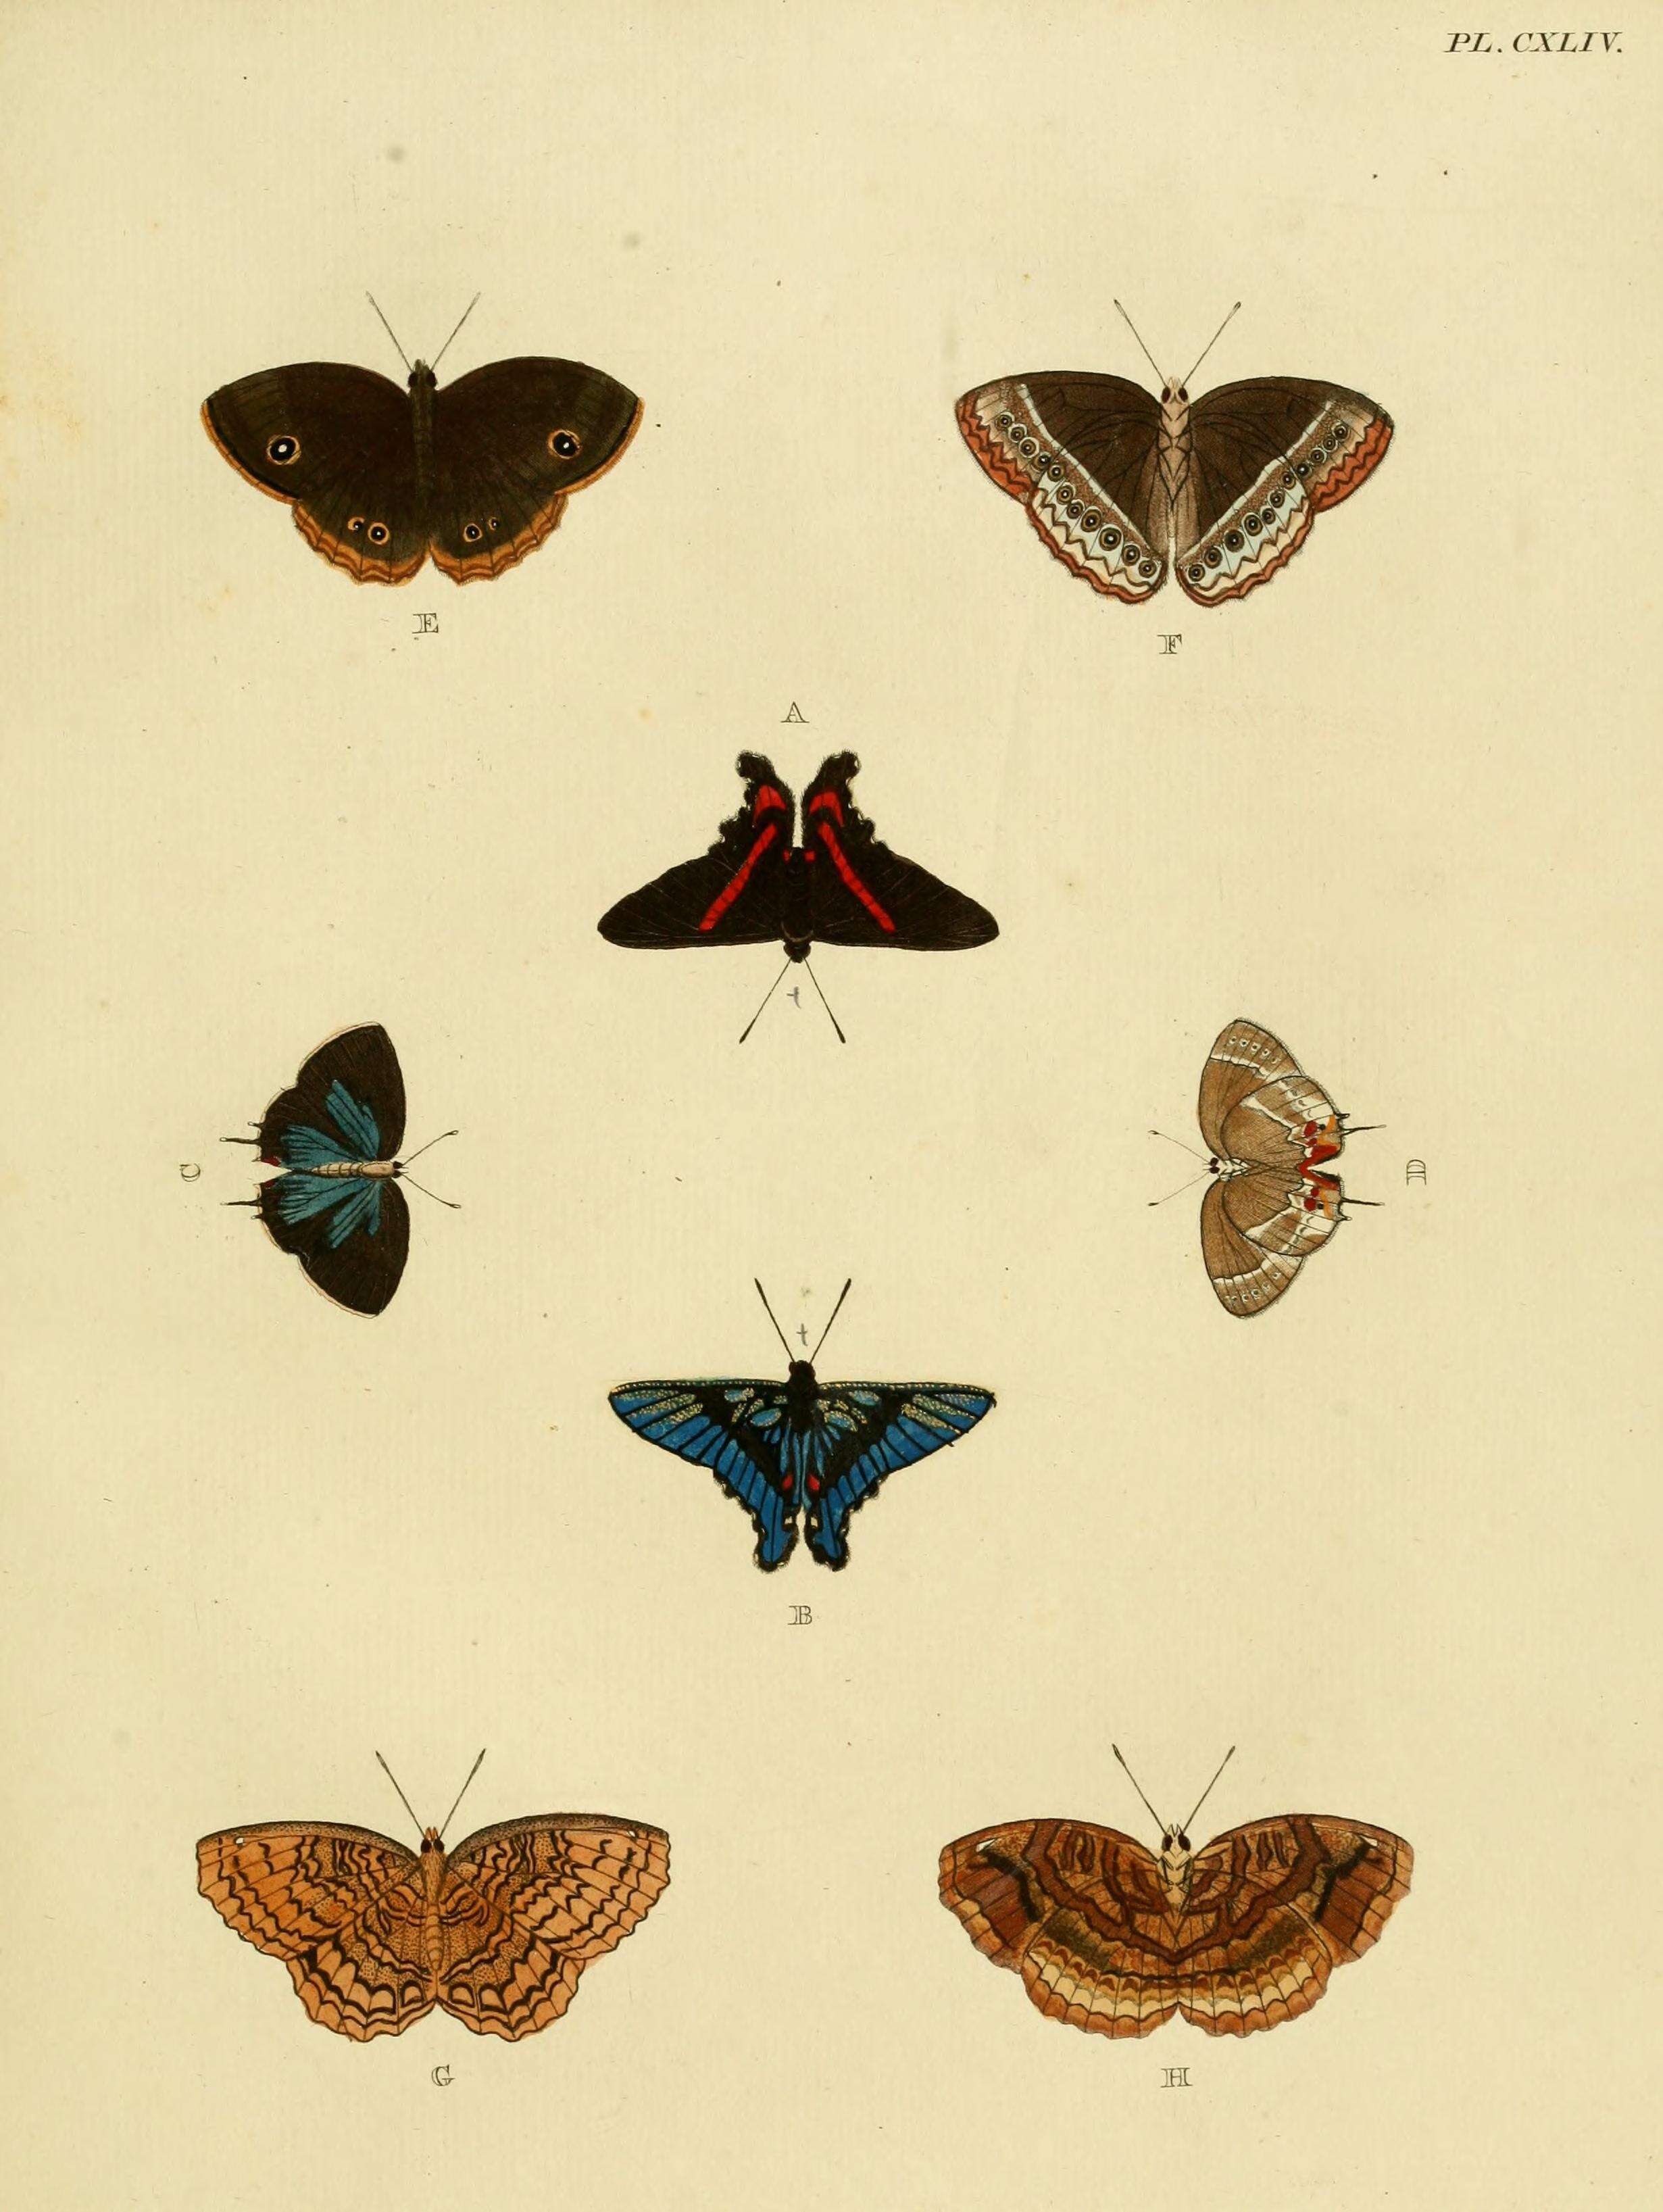 Image of Ancyluris meliboeus Fabricius 1776